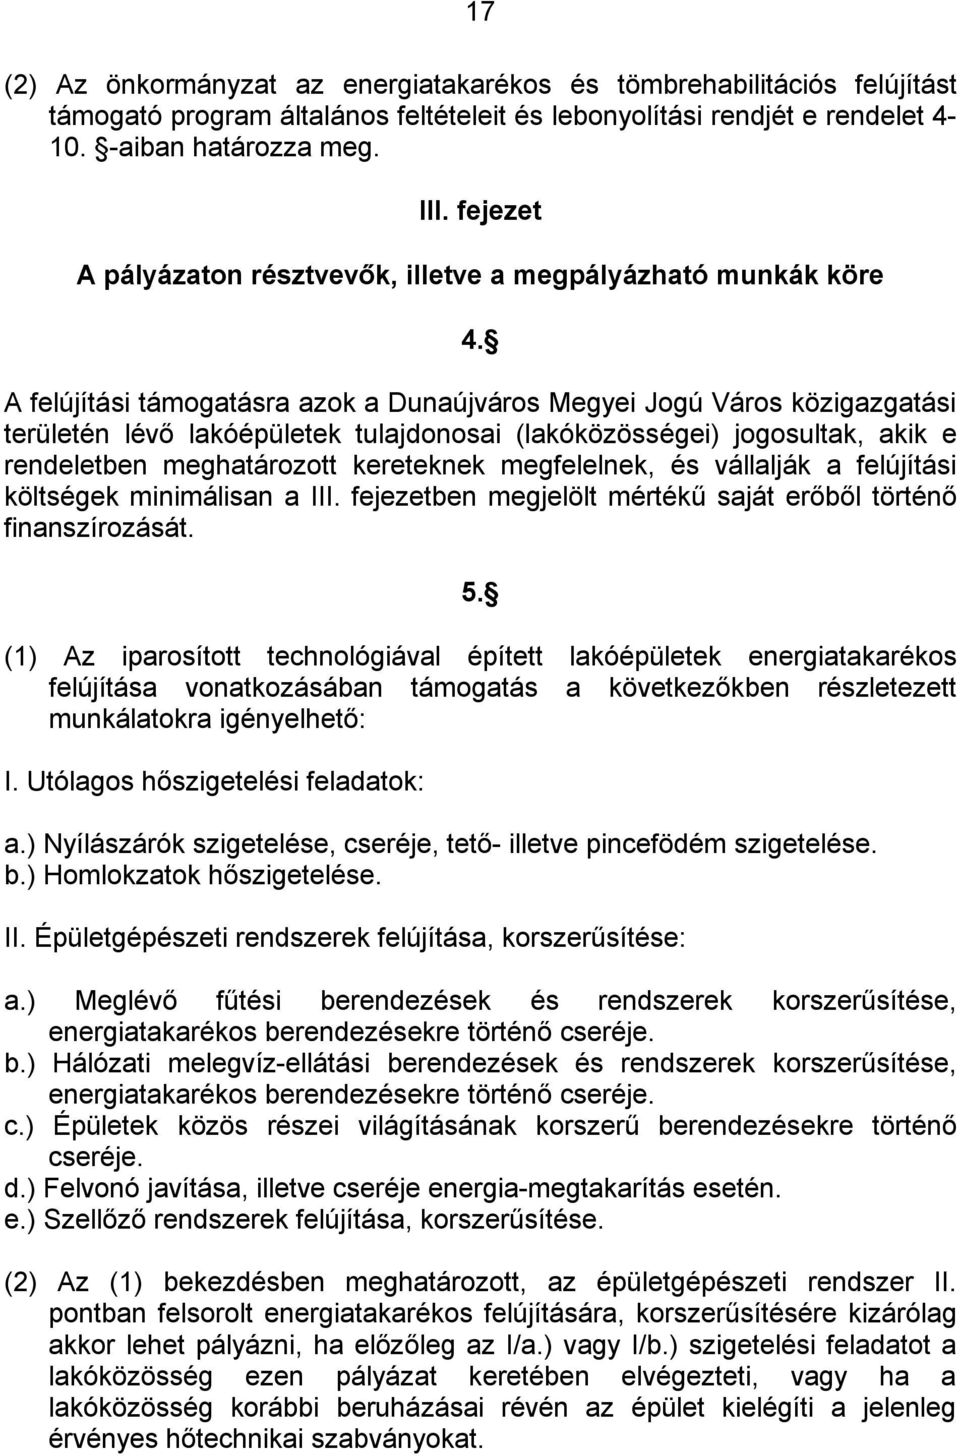 A felújítási támogatásra azok a Dunaújváros Megyei Jogú Város közigazgatási területén lévő lakóépületek tulajdonosai (lakóközösségei) jogosultak, akik e rendeletben meghatározott kereteknek